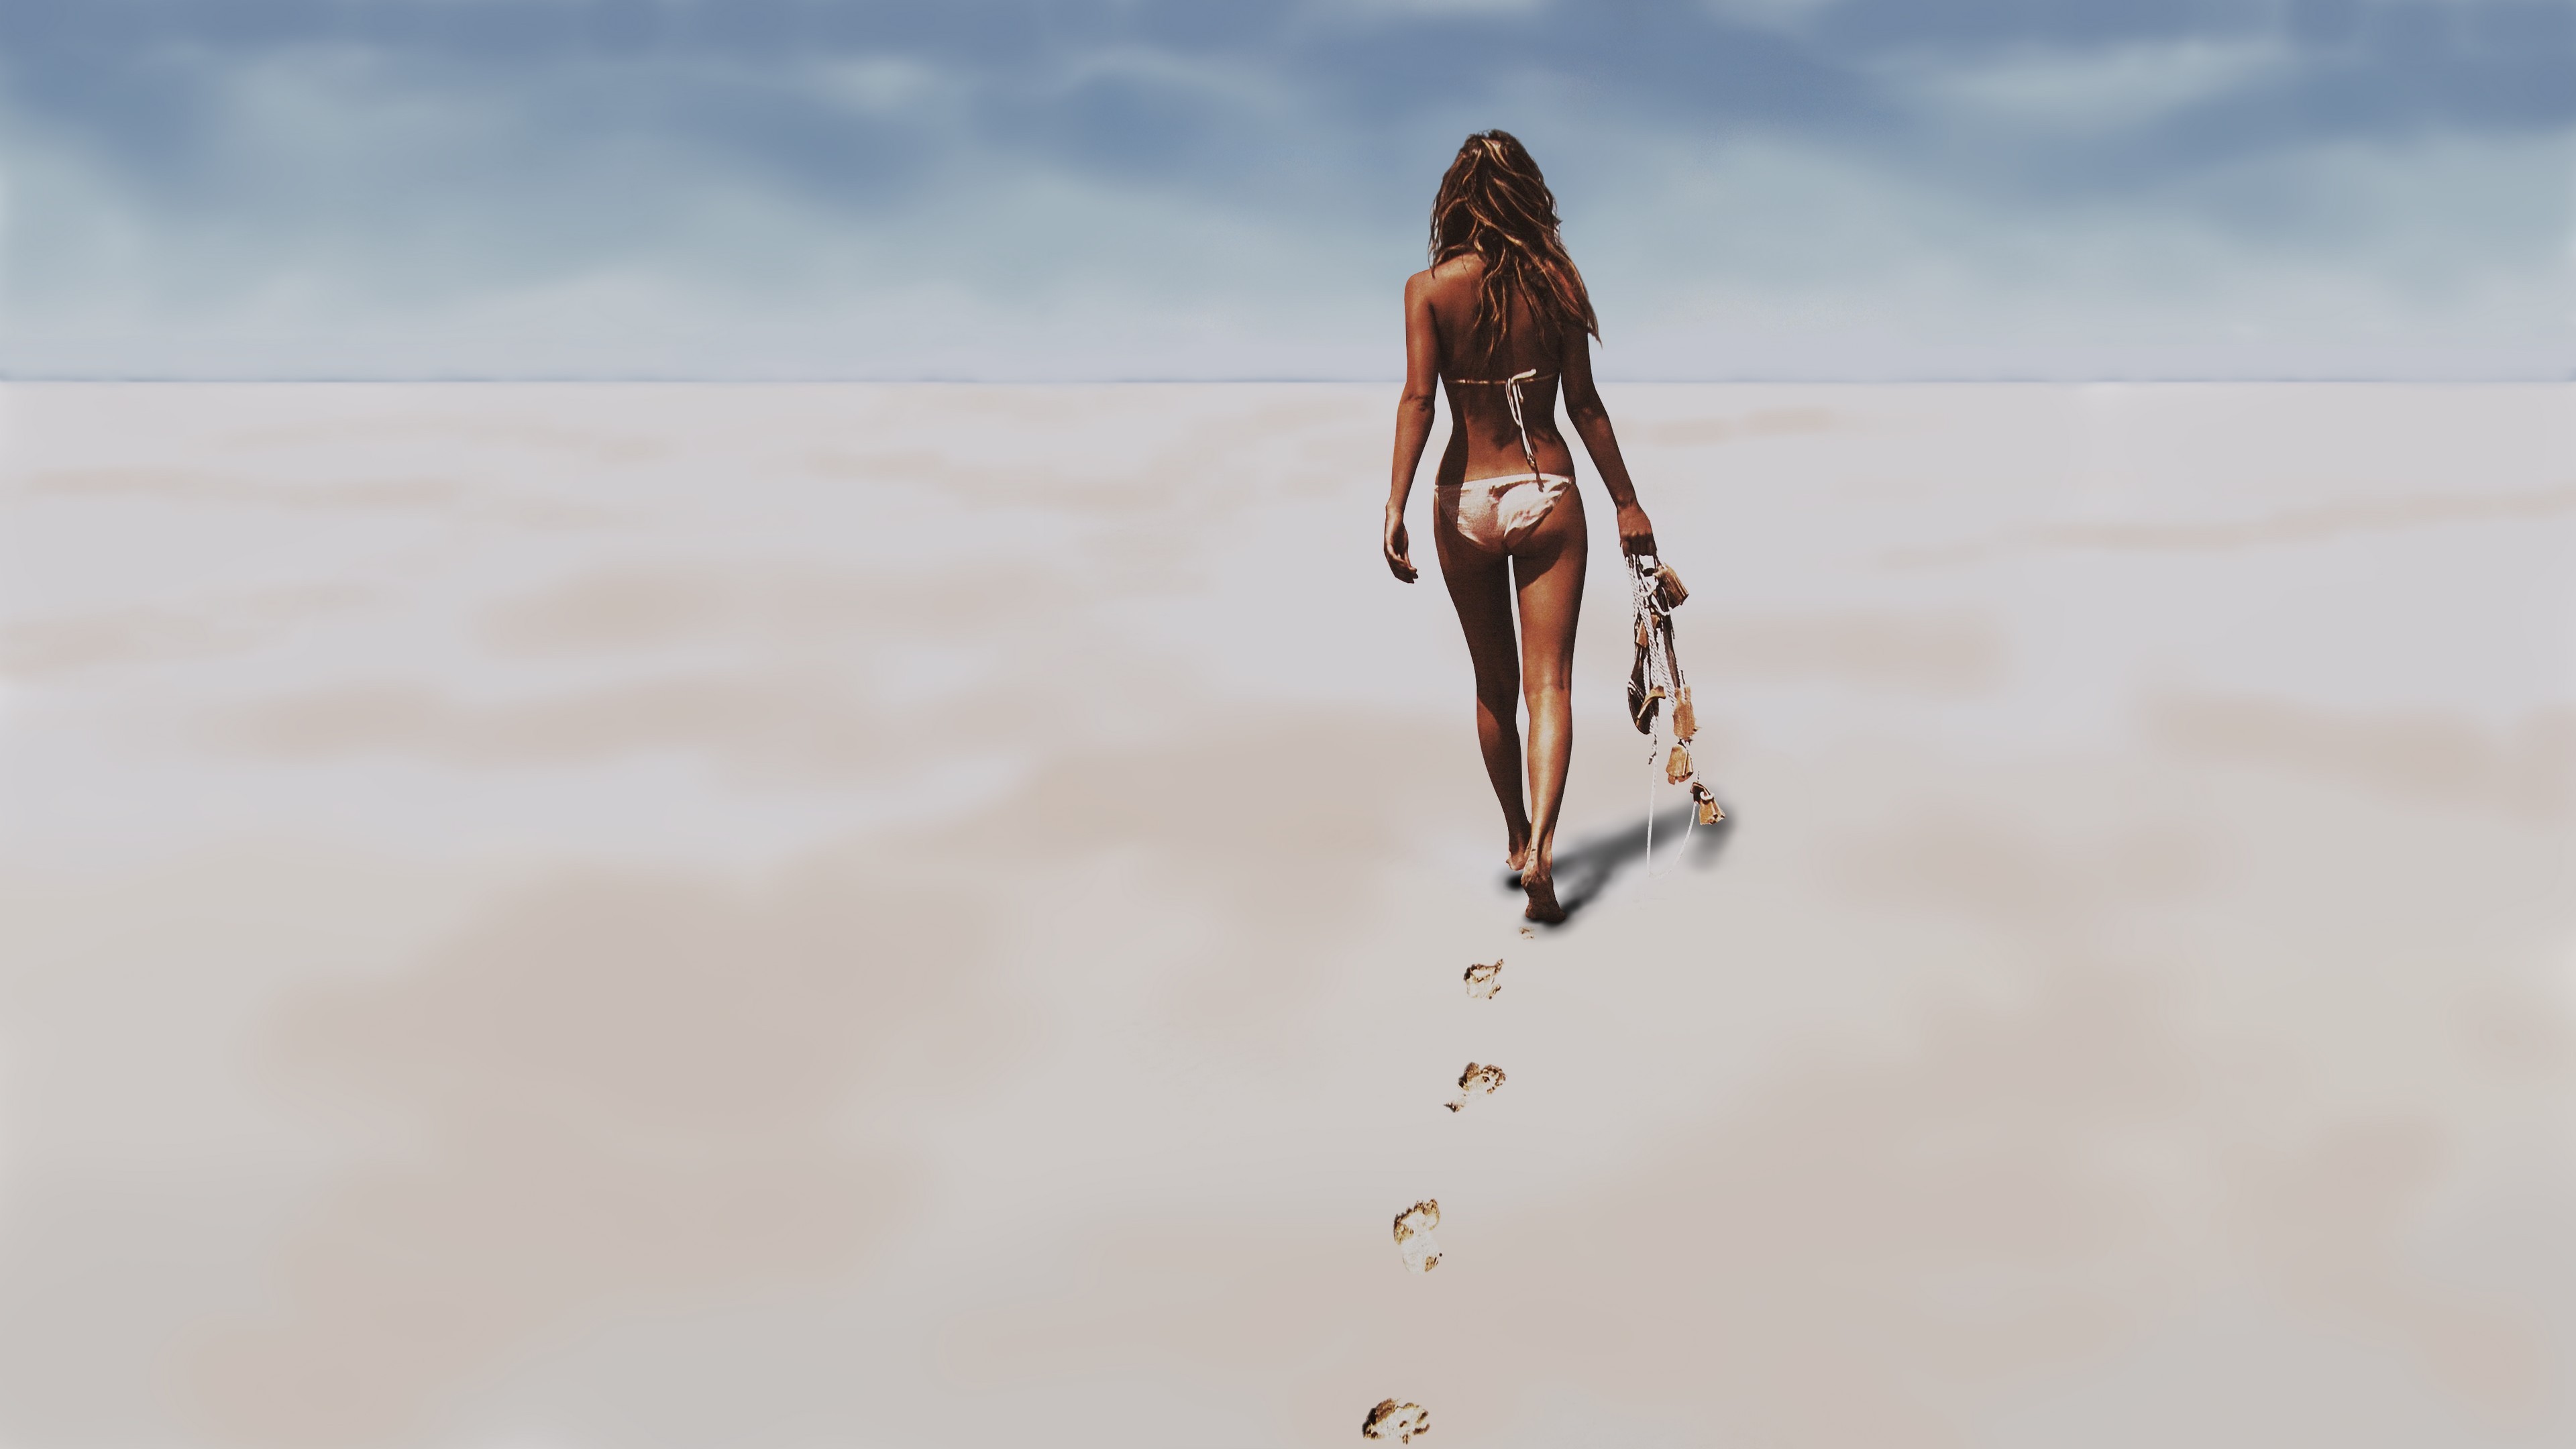 Пляжный песок прилипает к телу молодой девки Holly Anderson